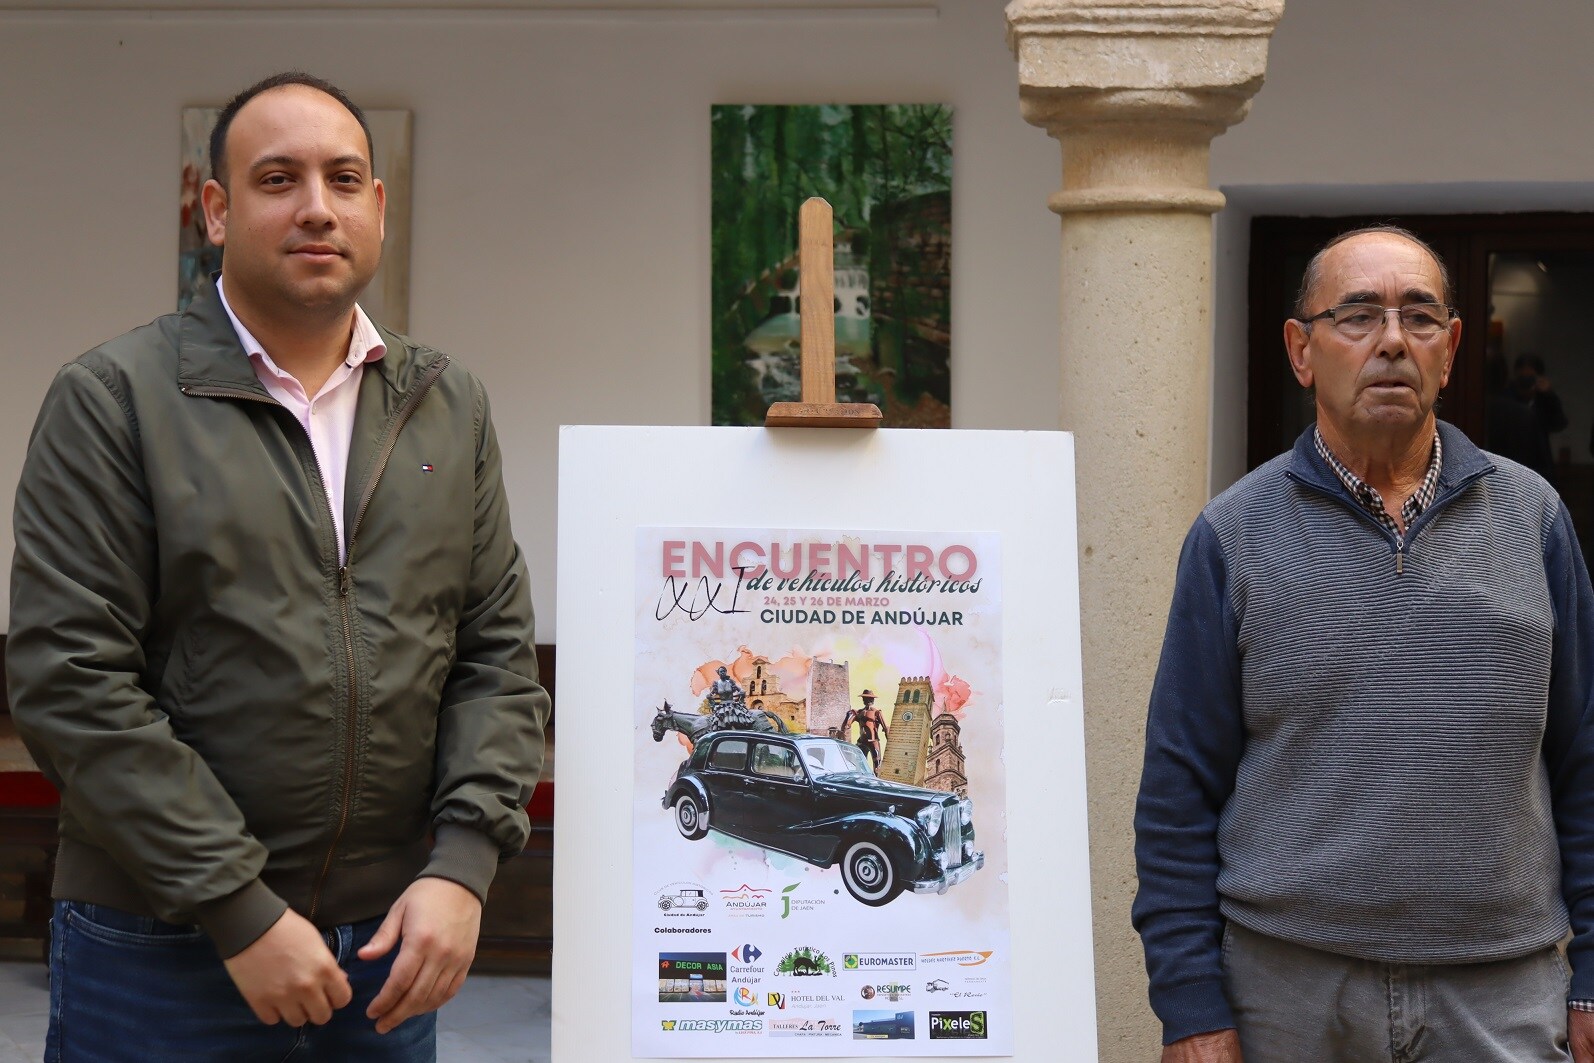 La XXI Edición del Encuentro de Vehículos Históricos 'Ciudad de Andújar' tendrá lugar los días 24, 25 y 26 de marzo